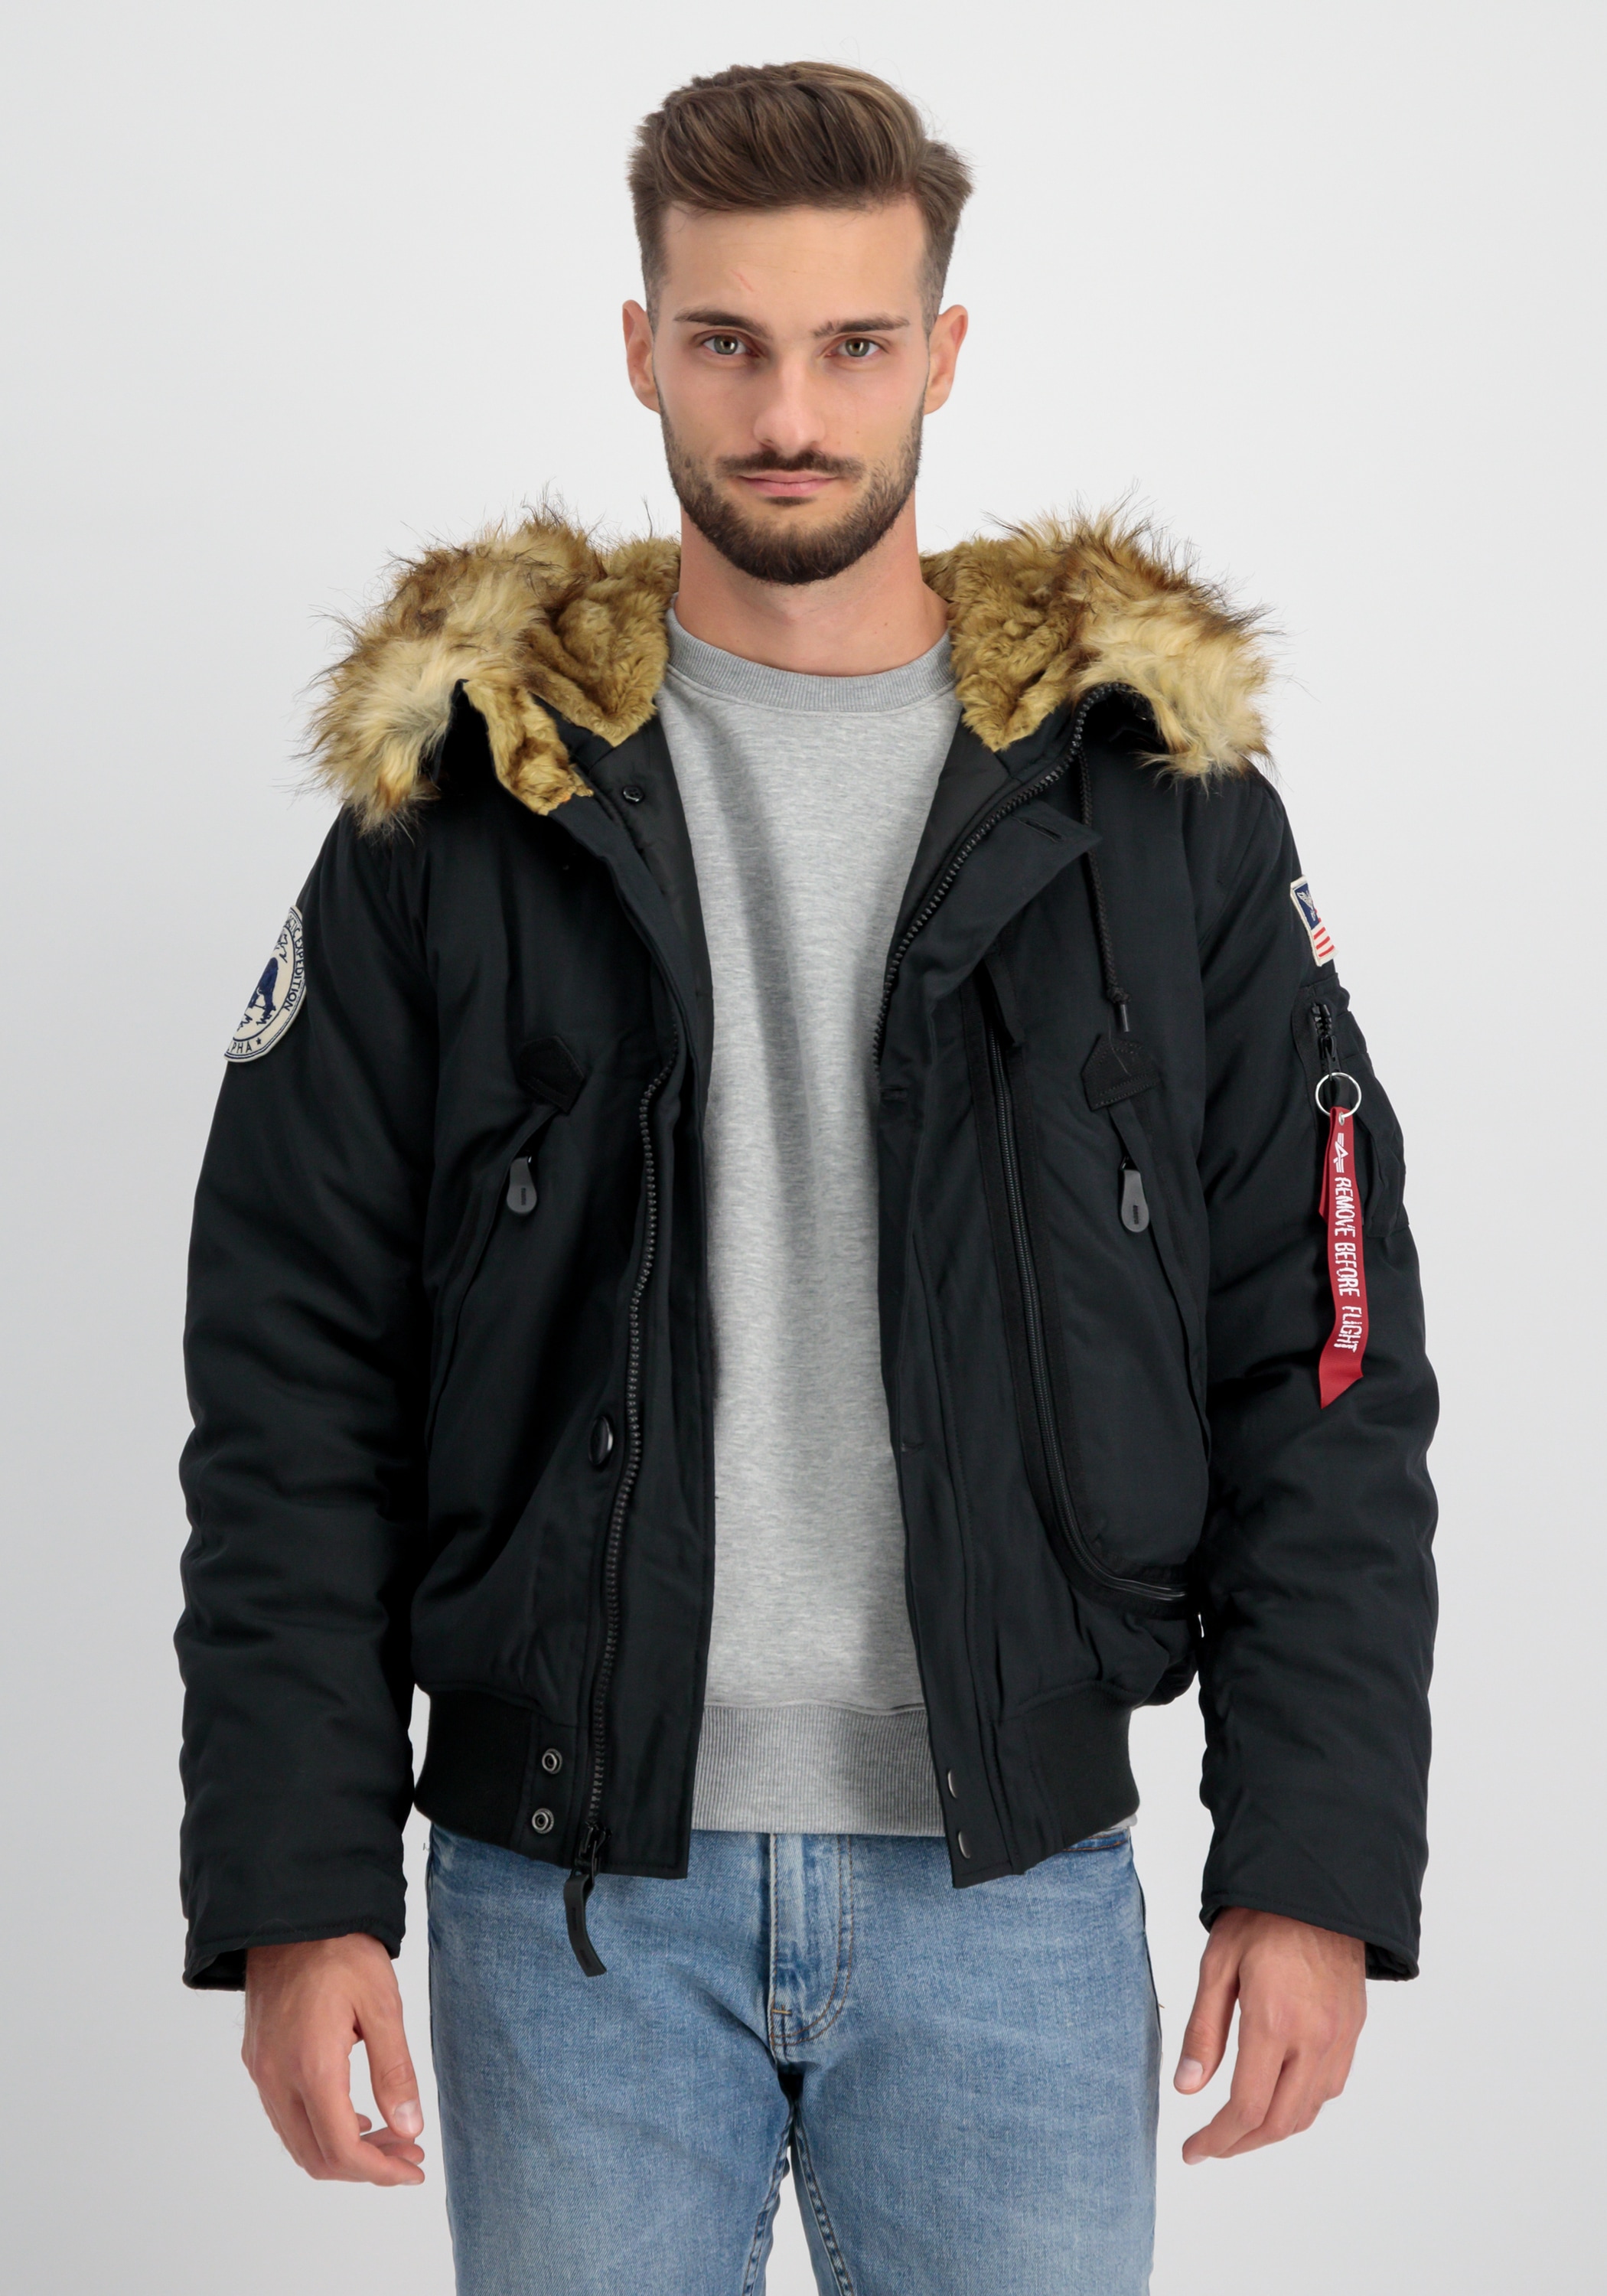 Polar Winterjacke Jacket & Alpha SV« Men Parka - Industries »Alpha Industries Winter Jackets bestellen